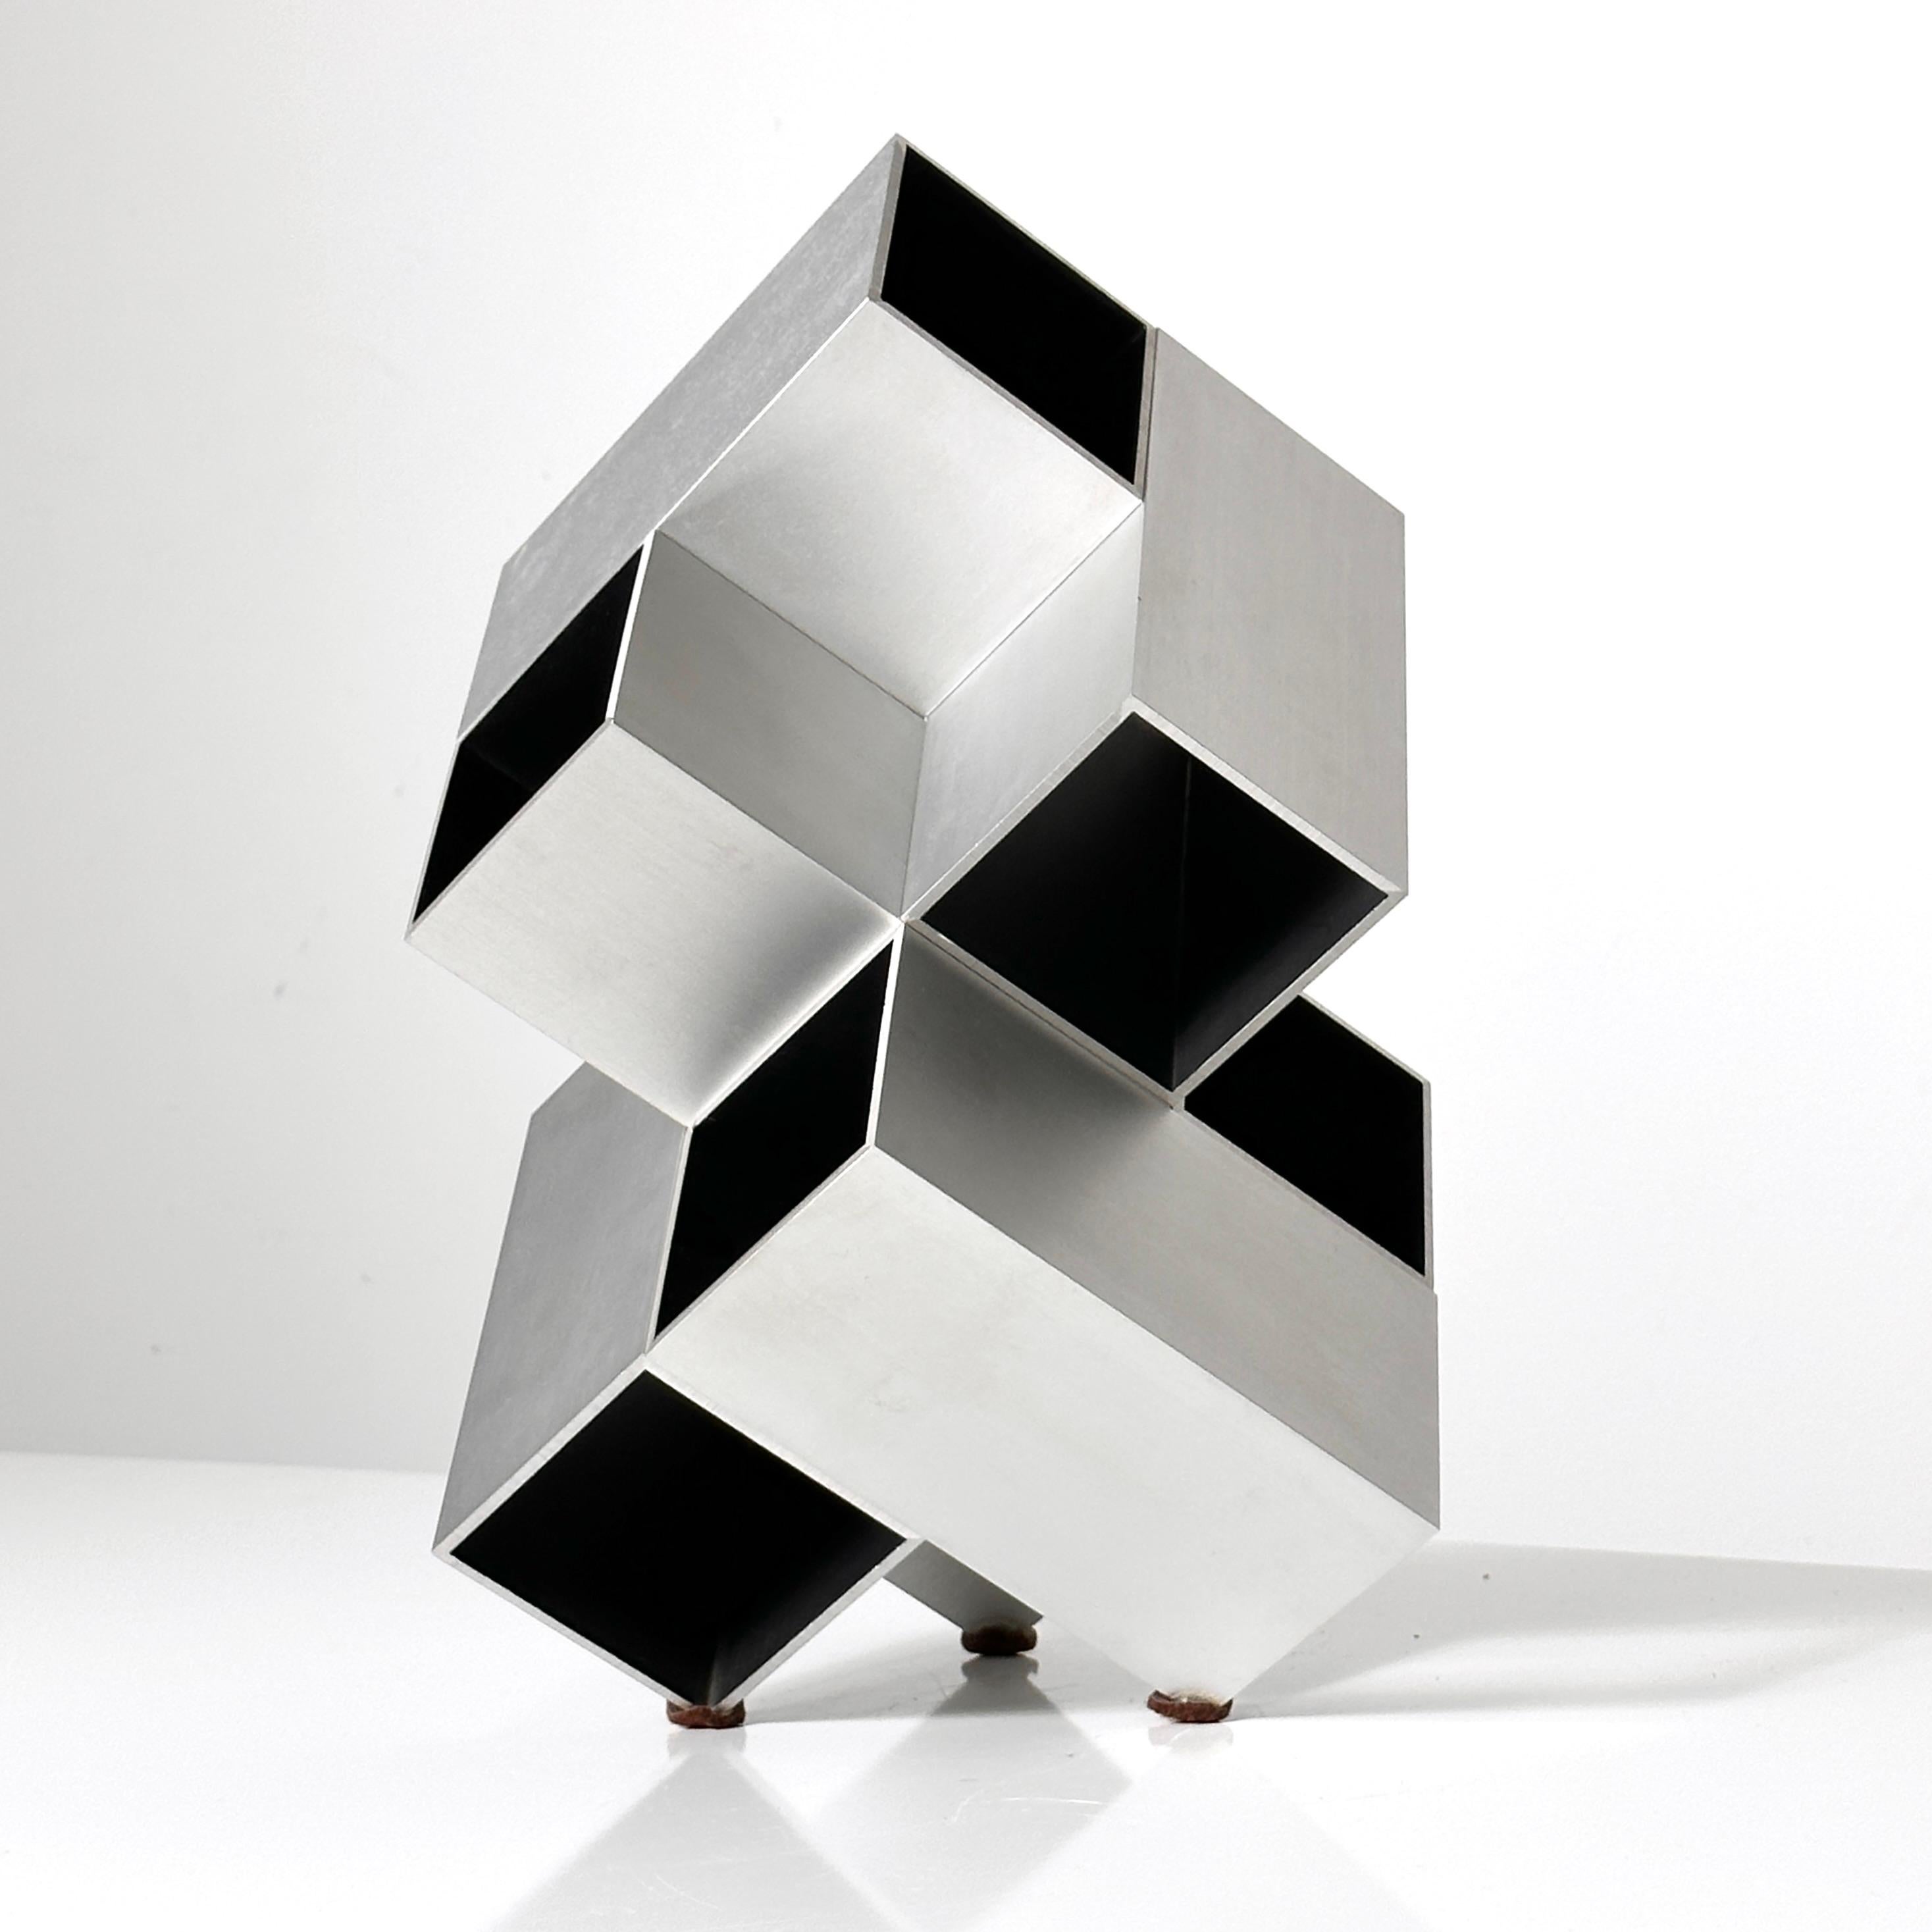 Sculpture cubique modulaire de Kosso Eloul Artiste israélien 1920-1995
Vendu à Toronto vers les années 1970 
Aluminium brossé et intérieur en bois peint en noir
Non signé, ce qui est normal car la plupart ne l'étaient pas. 

Kosso Eloul est né